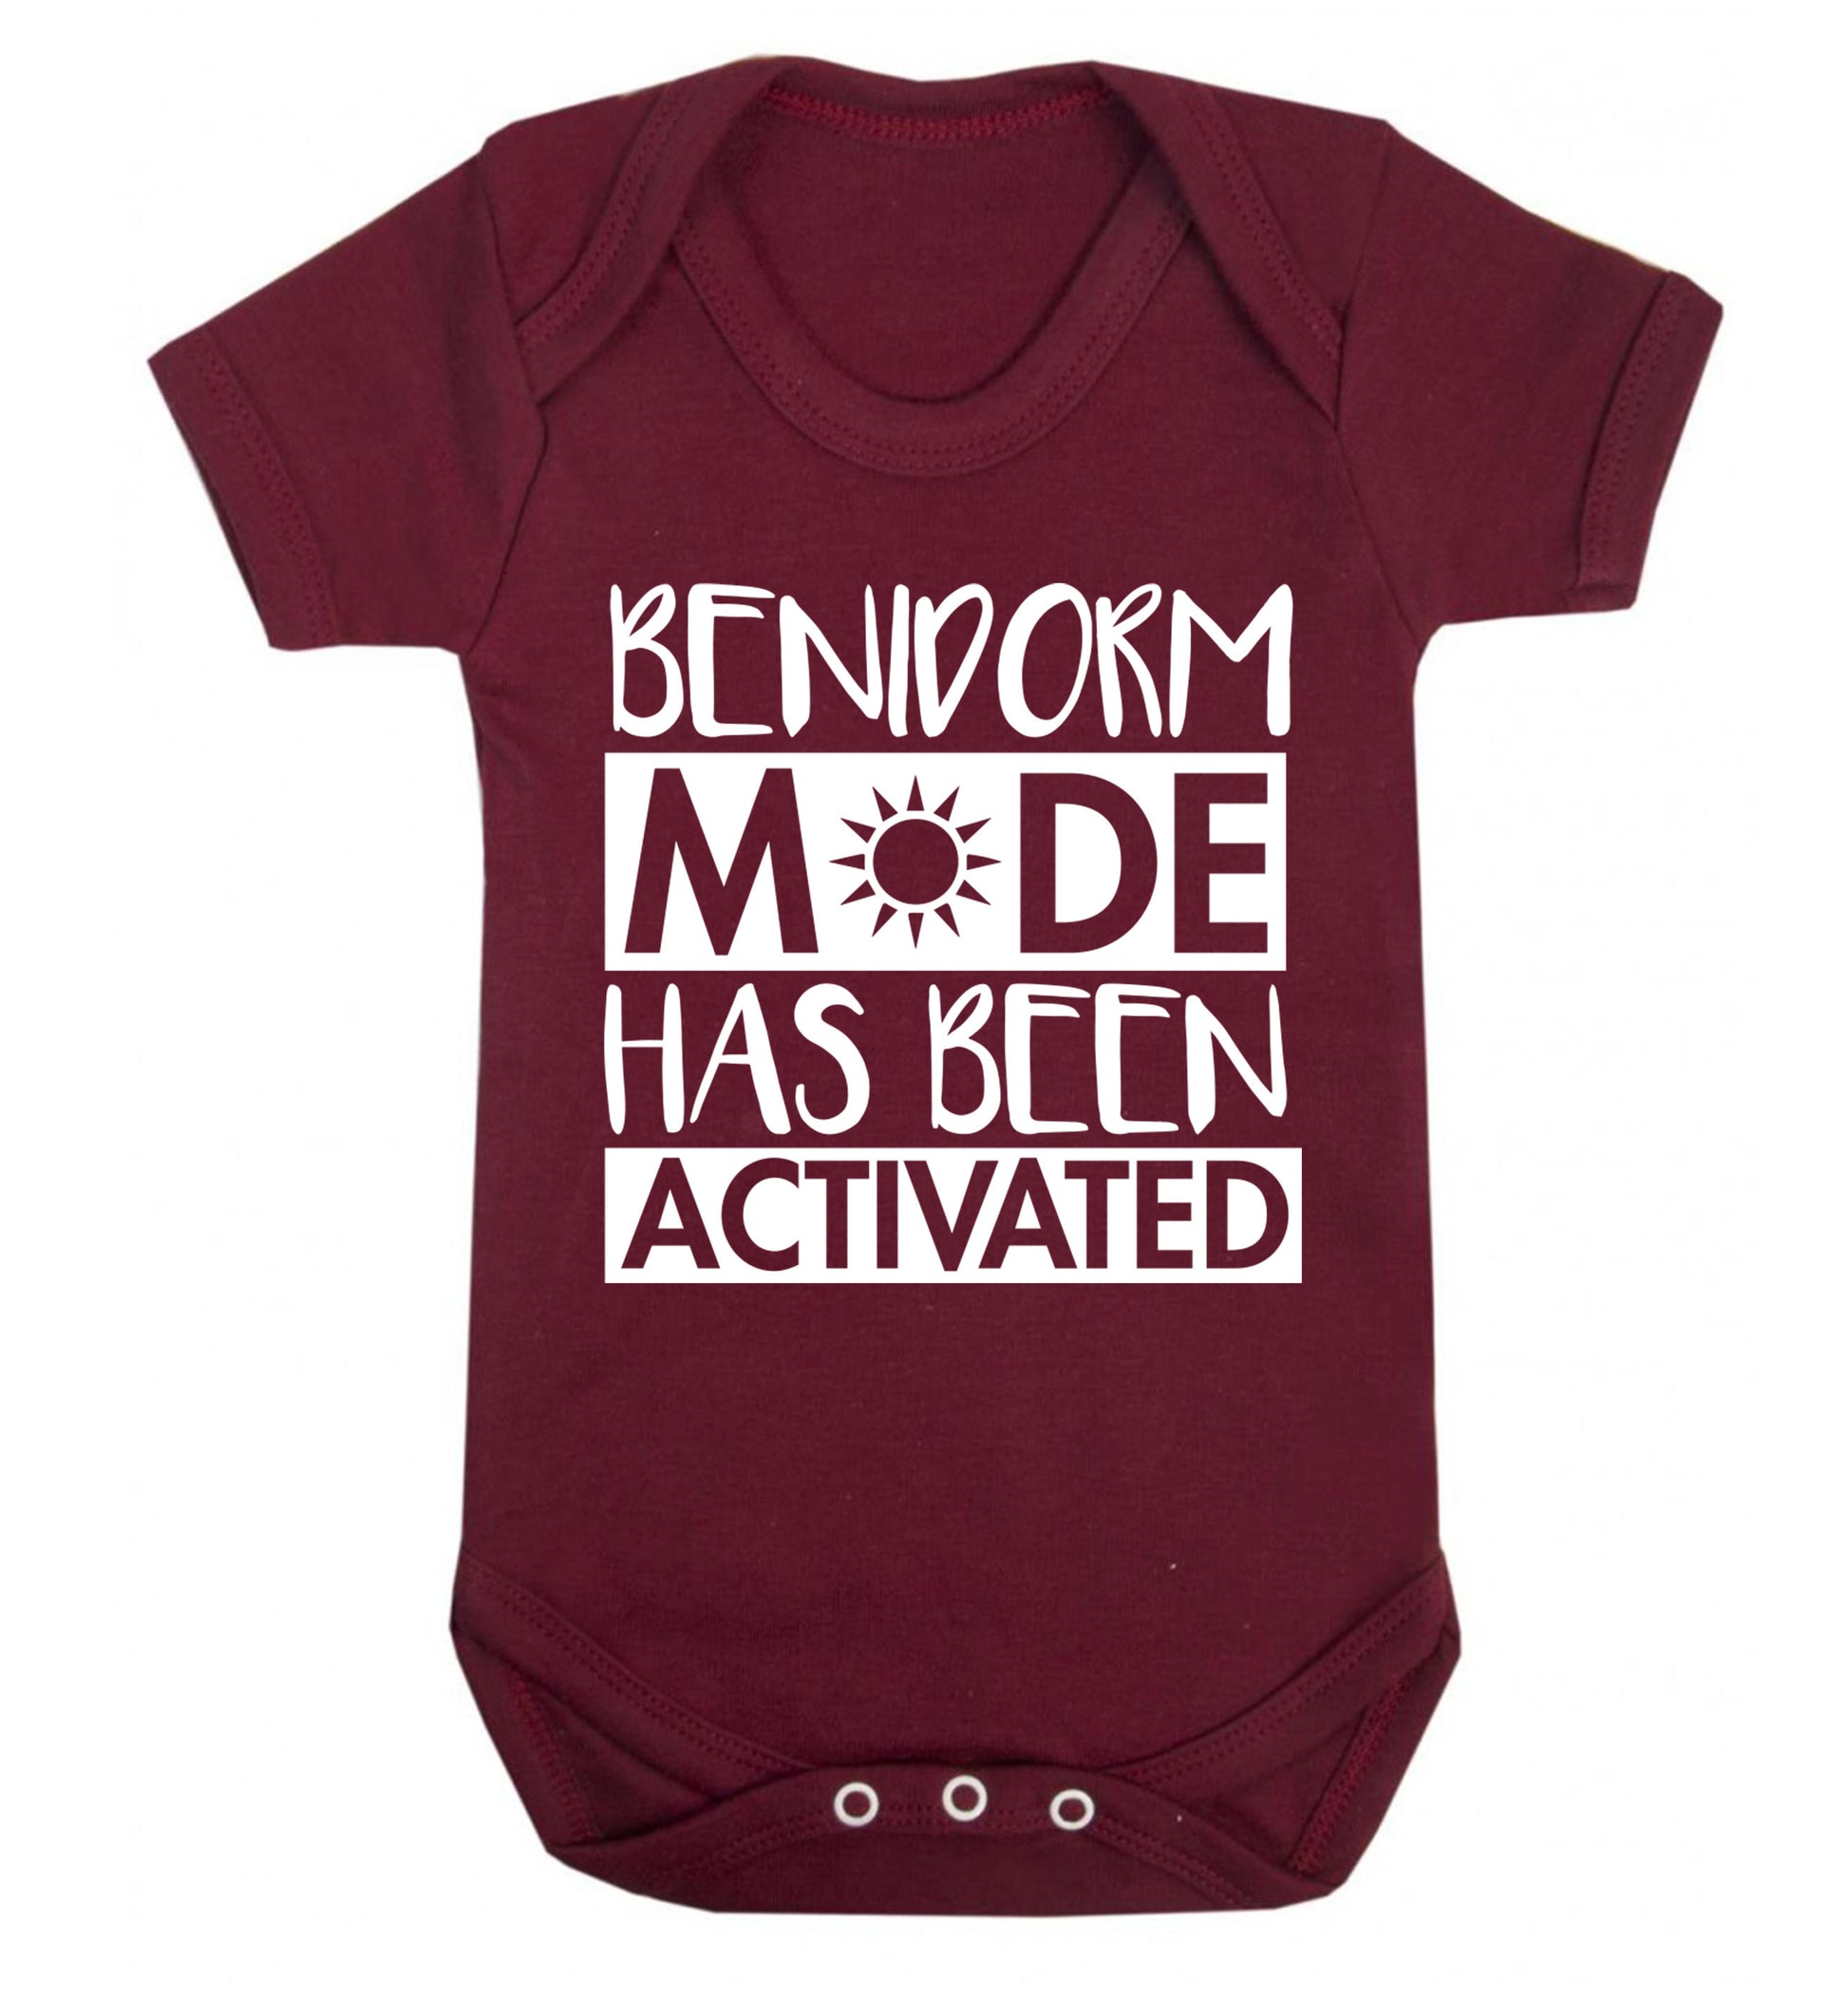 Benidorm mode has been activated Baby Vest maroon 18-24 months